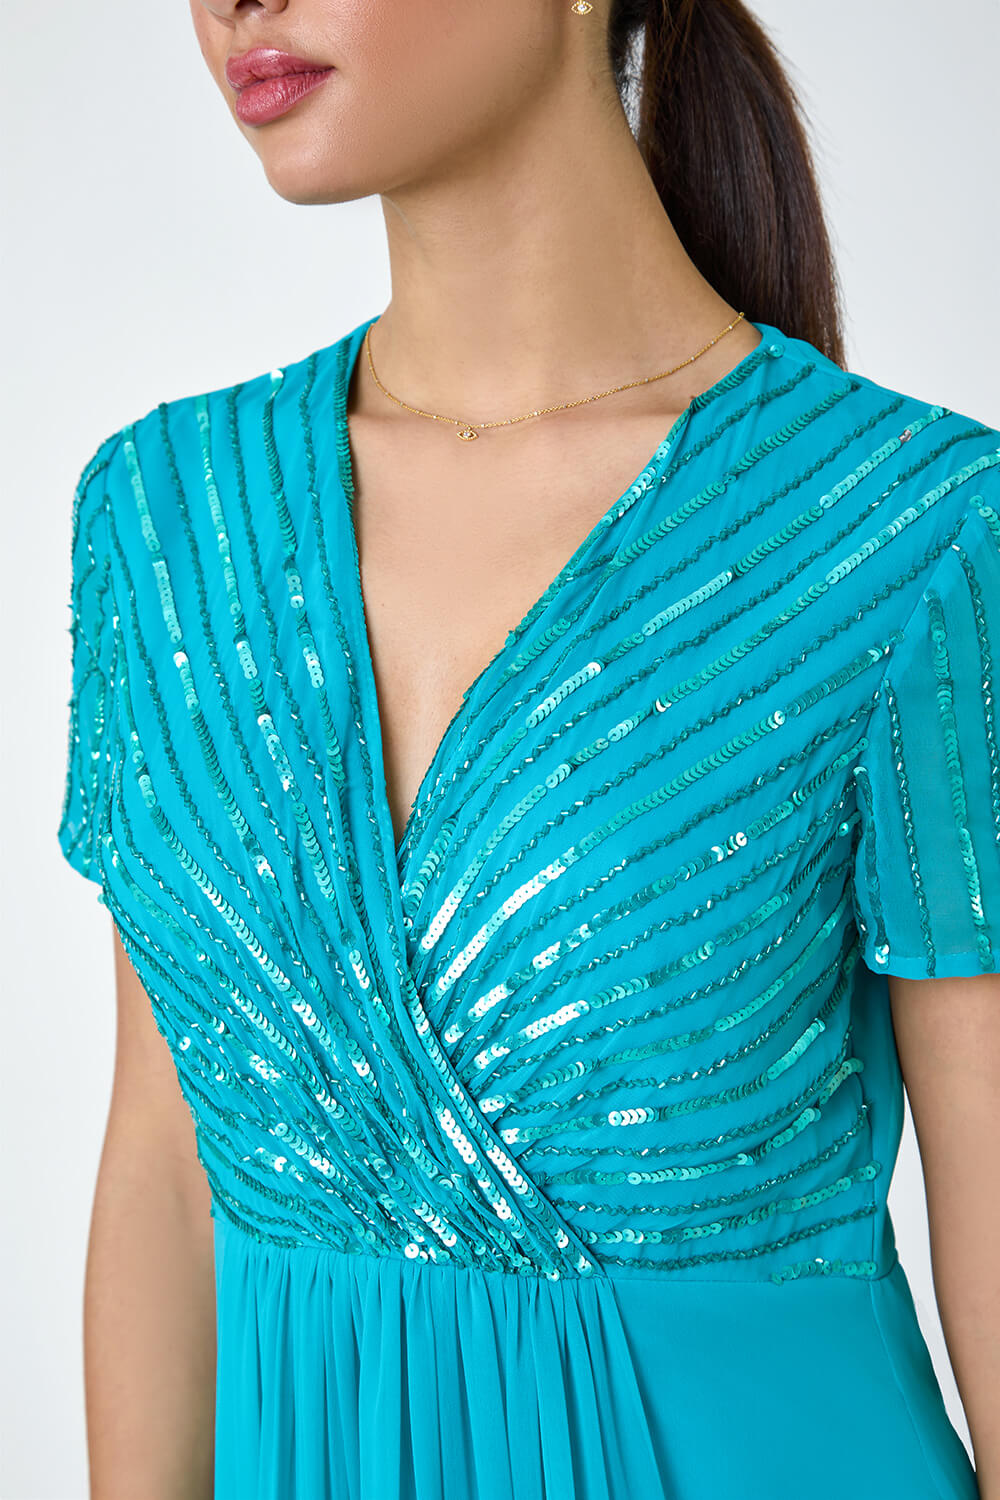 Teal Sequin Embellished Maxi Dress, Image 5 of 5